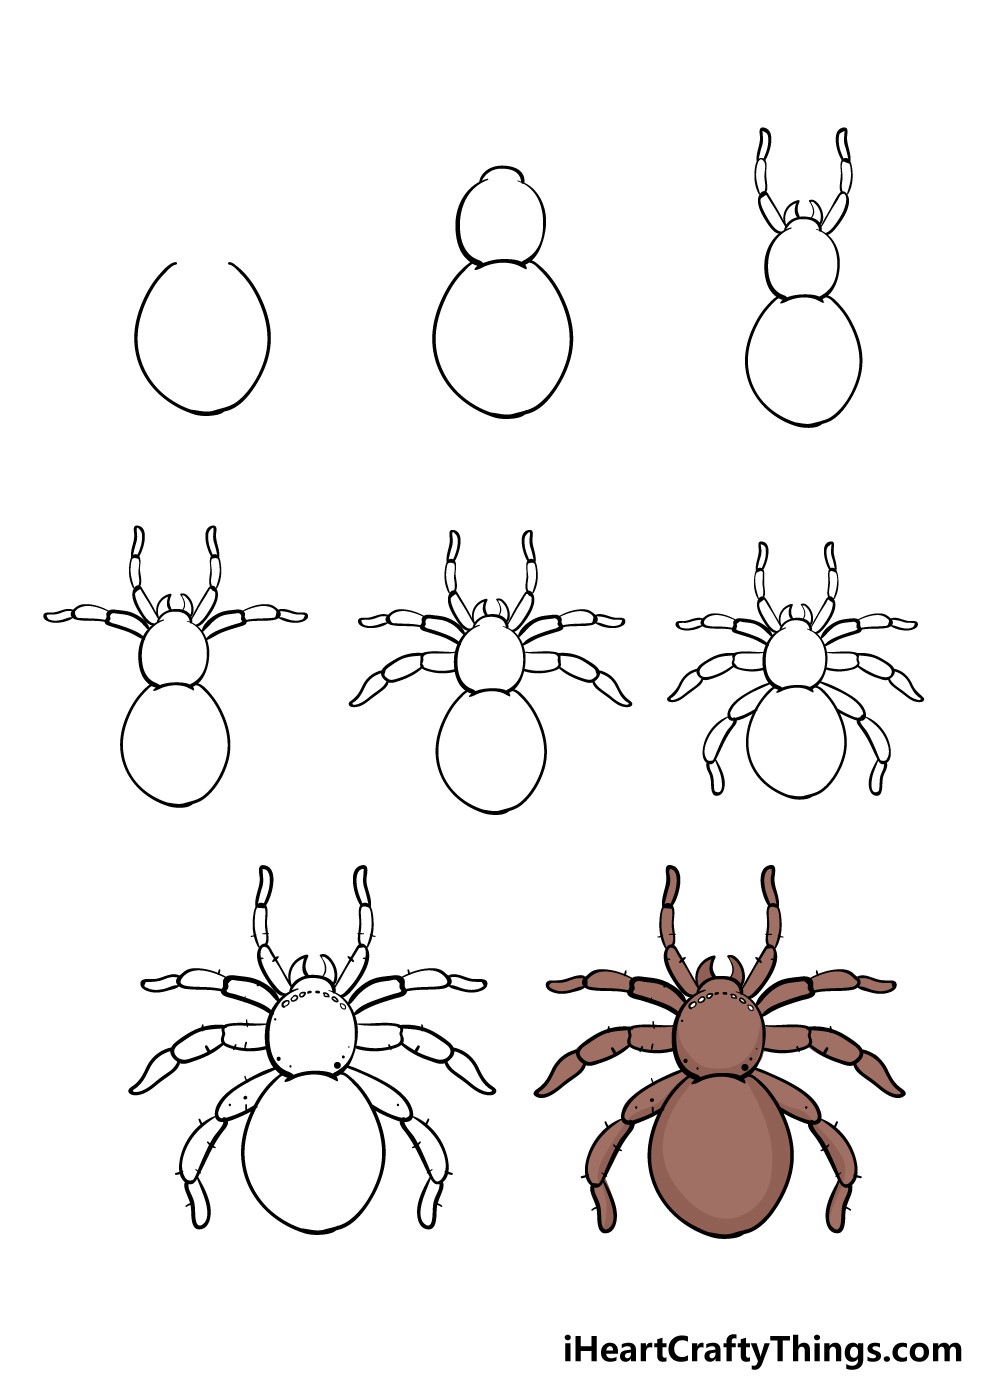 Araignée dessin